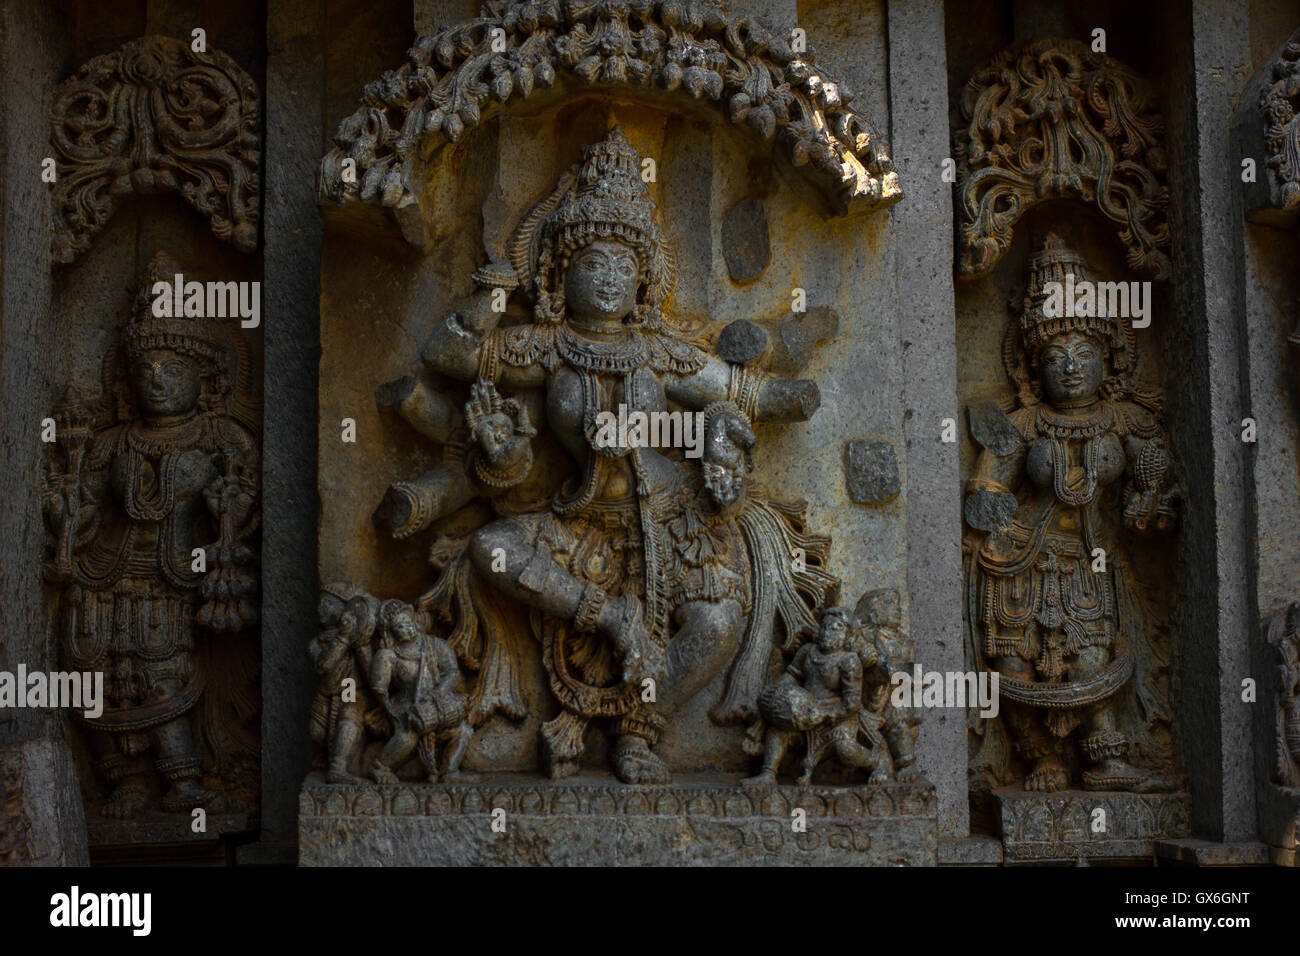 Dame danse sculpture sur eves culte extra-mur dans le temple de Chennakesava Somanathapura,Mysore, Inde Karnataka,Asie, Banque D'Images